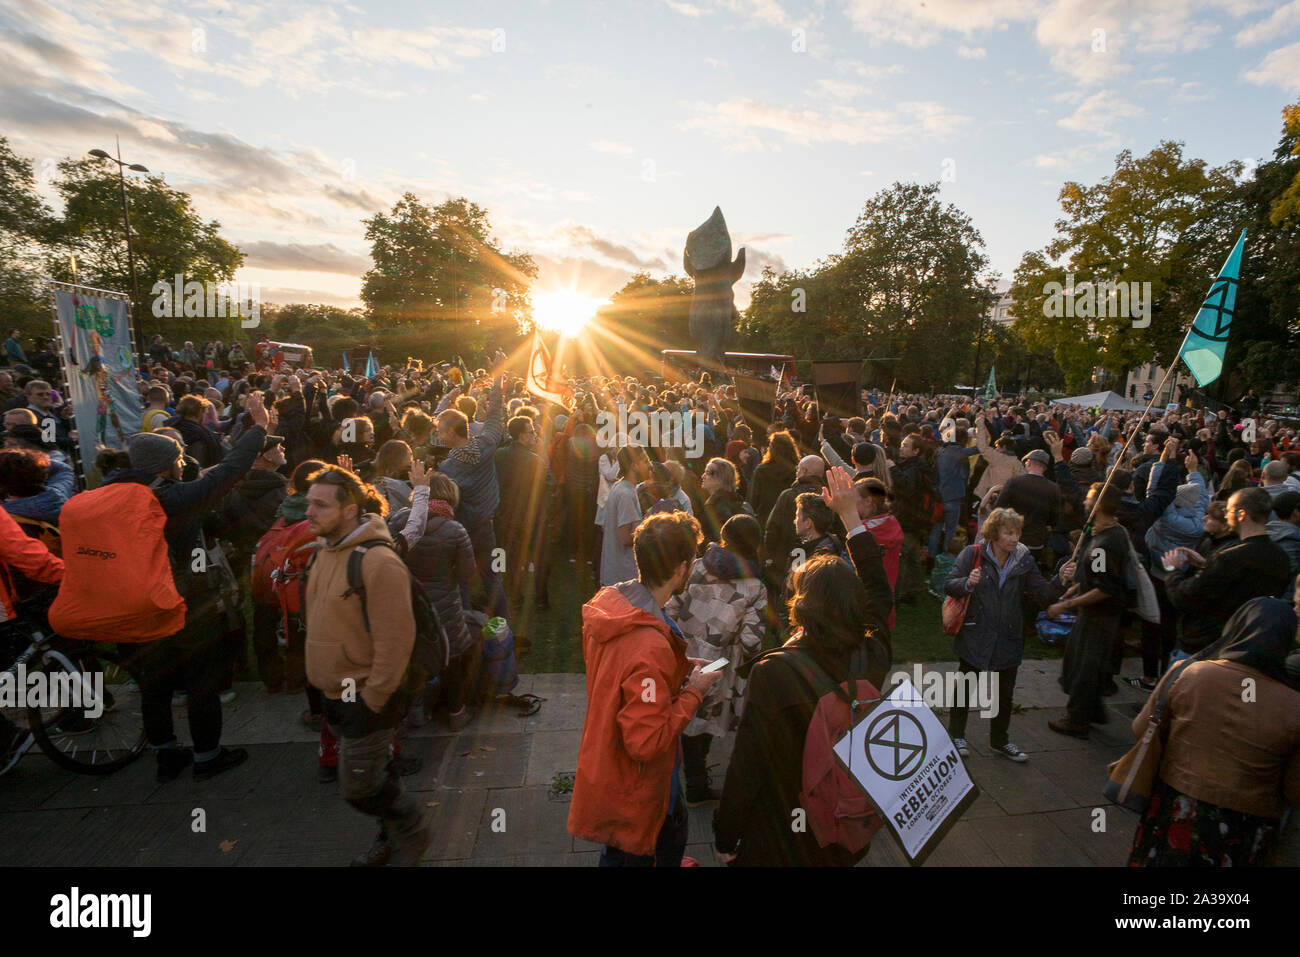 Oktober 6th, 2019, London, UK: Tausende von Aussterben Rebellion Aktivisten im Marble Arch für die Eröffnungsfeier sammeln, fordert "einen Moment innehalten, Atem zu schöpfen, und werfen Sie einen Blick in uns selbst und in dieser evolutionäre Moment miteinander Schritt". Mehrere Aktivisten beleuchtet "Leuchttürme der Wahrheit", die sich auf die verschiedenen Aktionen in London getroffen werden. "Wir verstehen das Leben zu kostbar. Hören wir die Notwendigkeit für eine Pause, so dass wir für das, was Fragen der Menschheit muss sich fragen, bevor er findet Antworten, die in den Full Service zu allen Lebens sind zu hören. Wir fordern die Menschheit genau ich zu hören Stockfoto